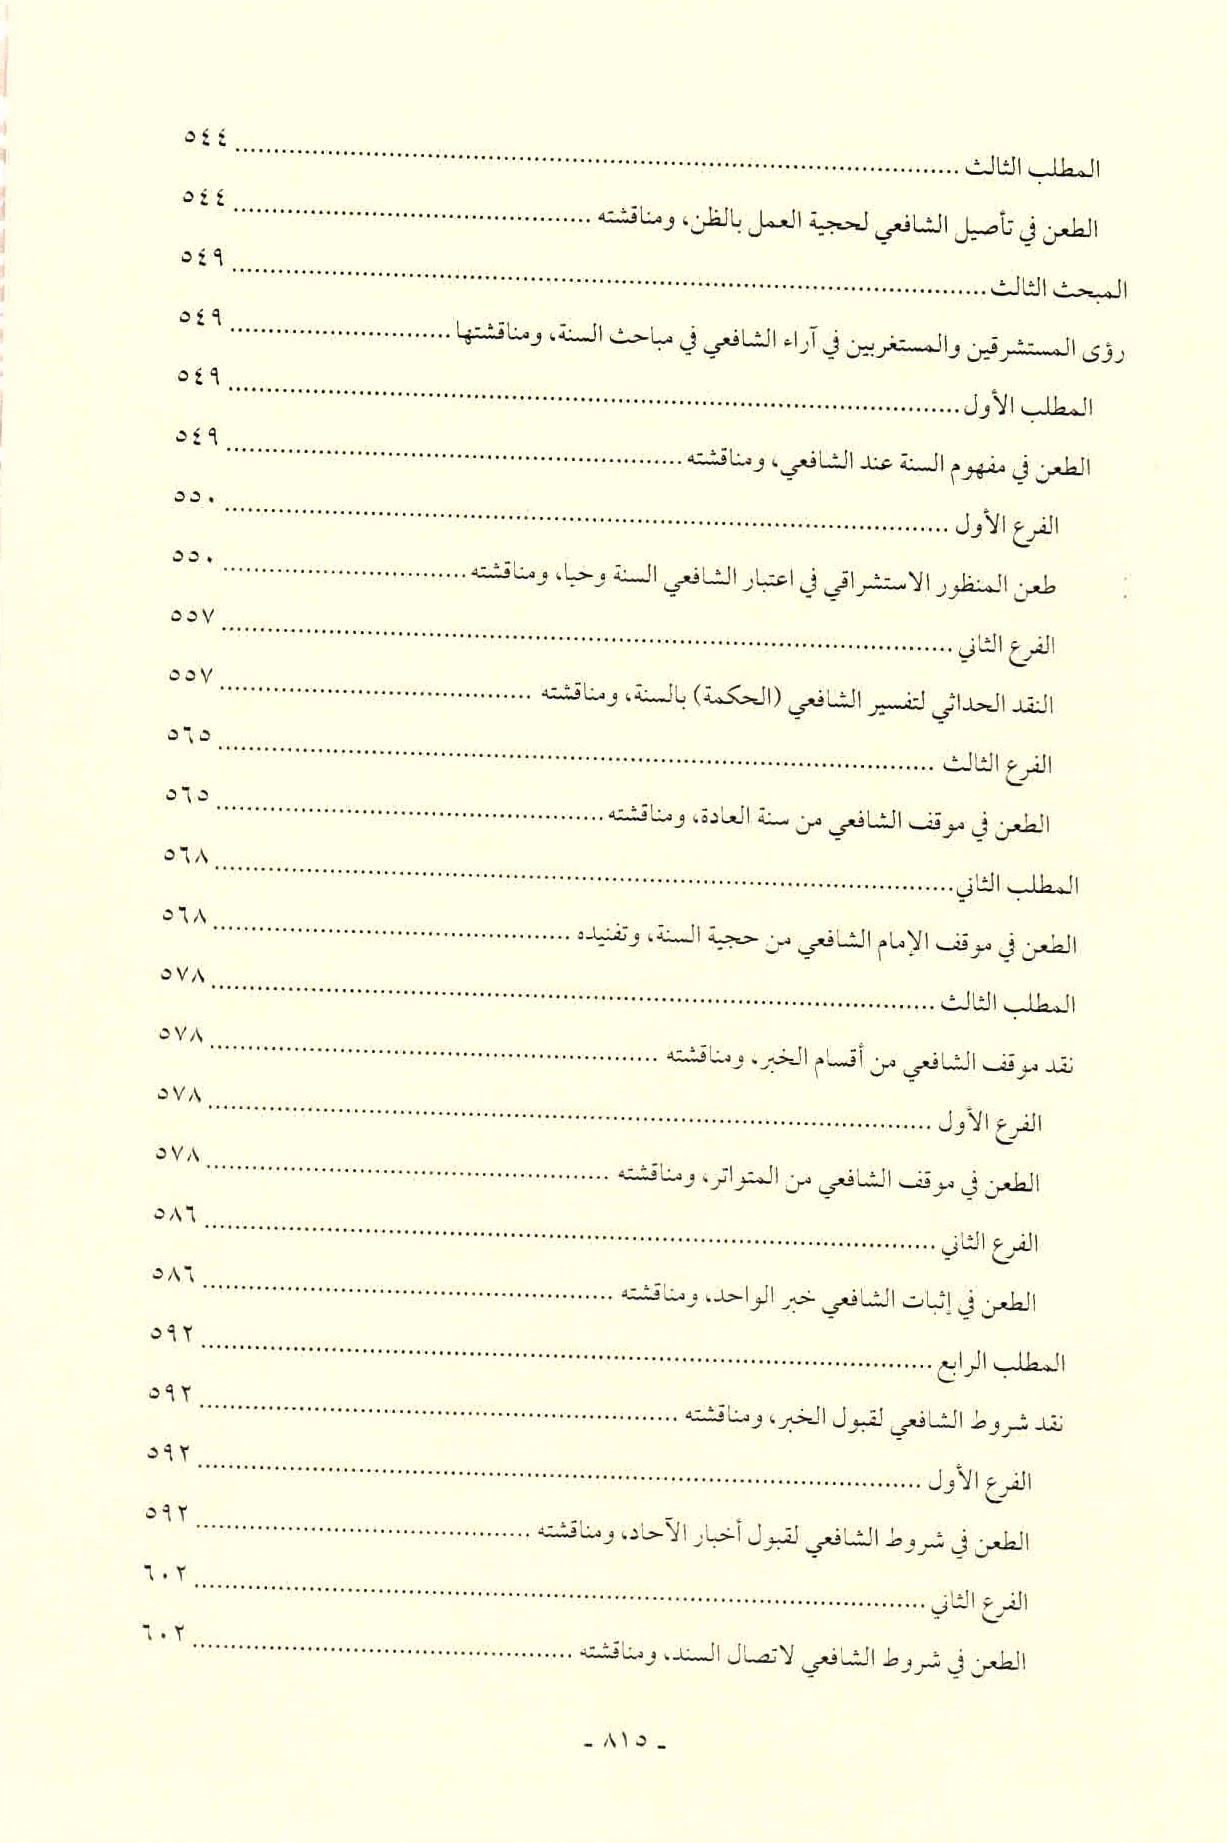 قائمة محتويات كتاب افتراءات المستشرقين والحداثيين على أصول الشريعة وأئمتها للدكتور هاني محمود ص. 815